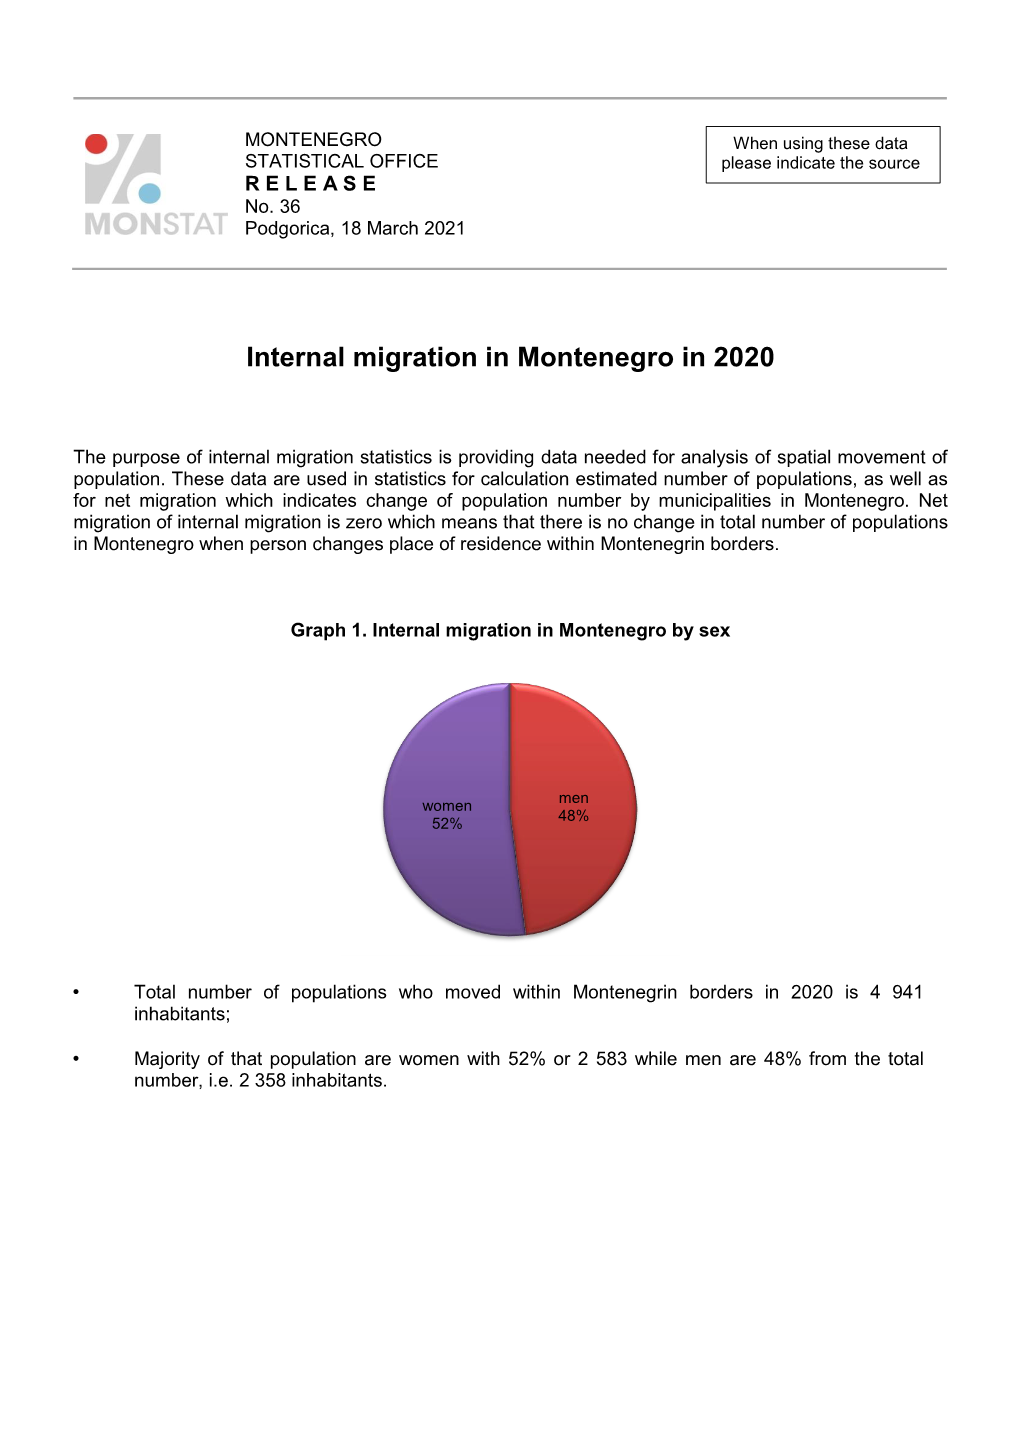 Internal Migration in Montenegro in 2020